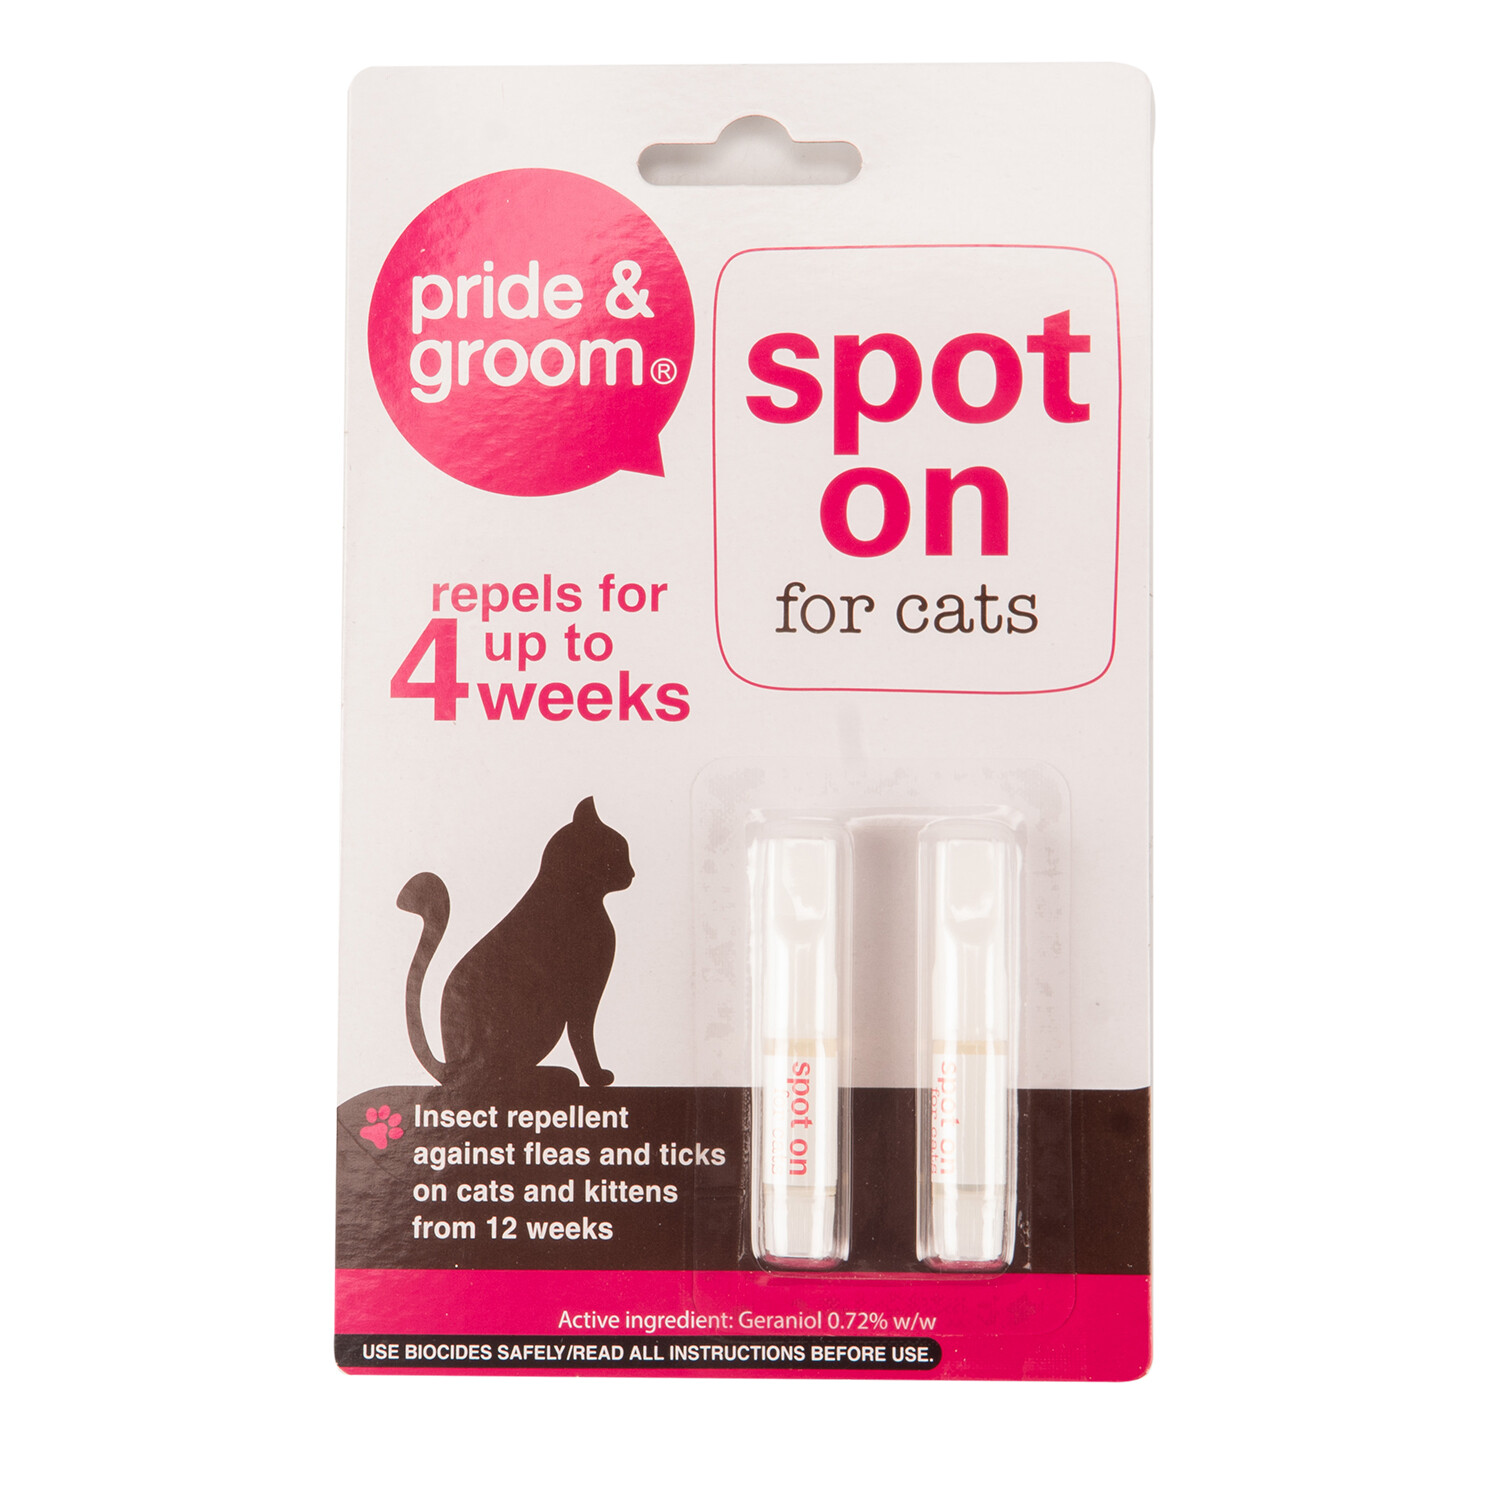 Pride & Groom Cat Spot On 2 Pack Image